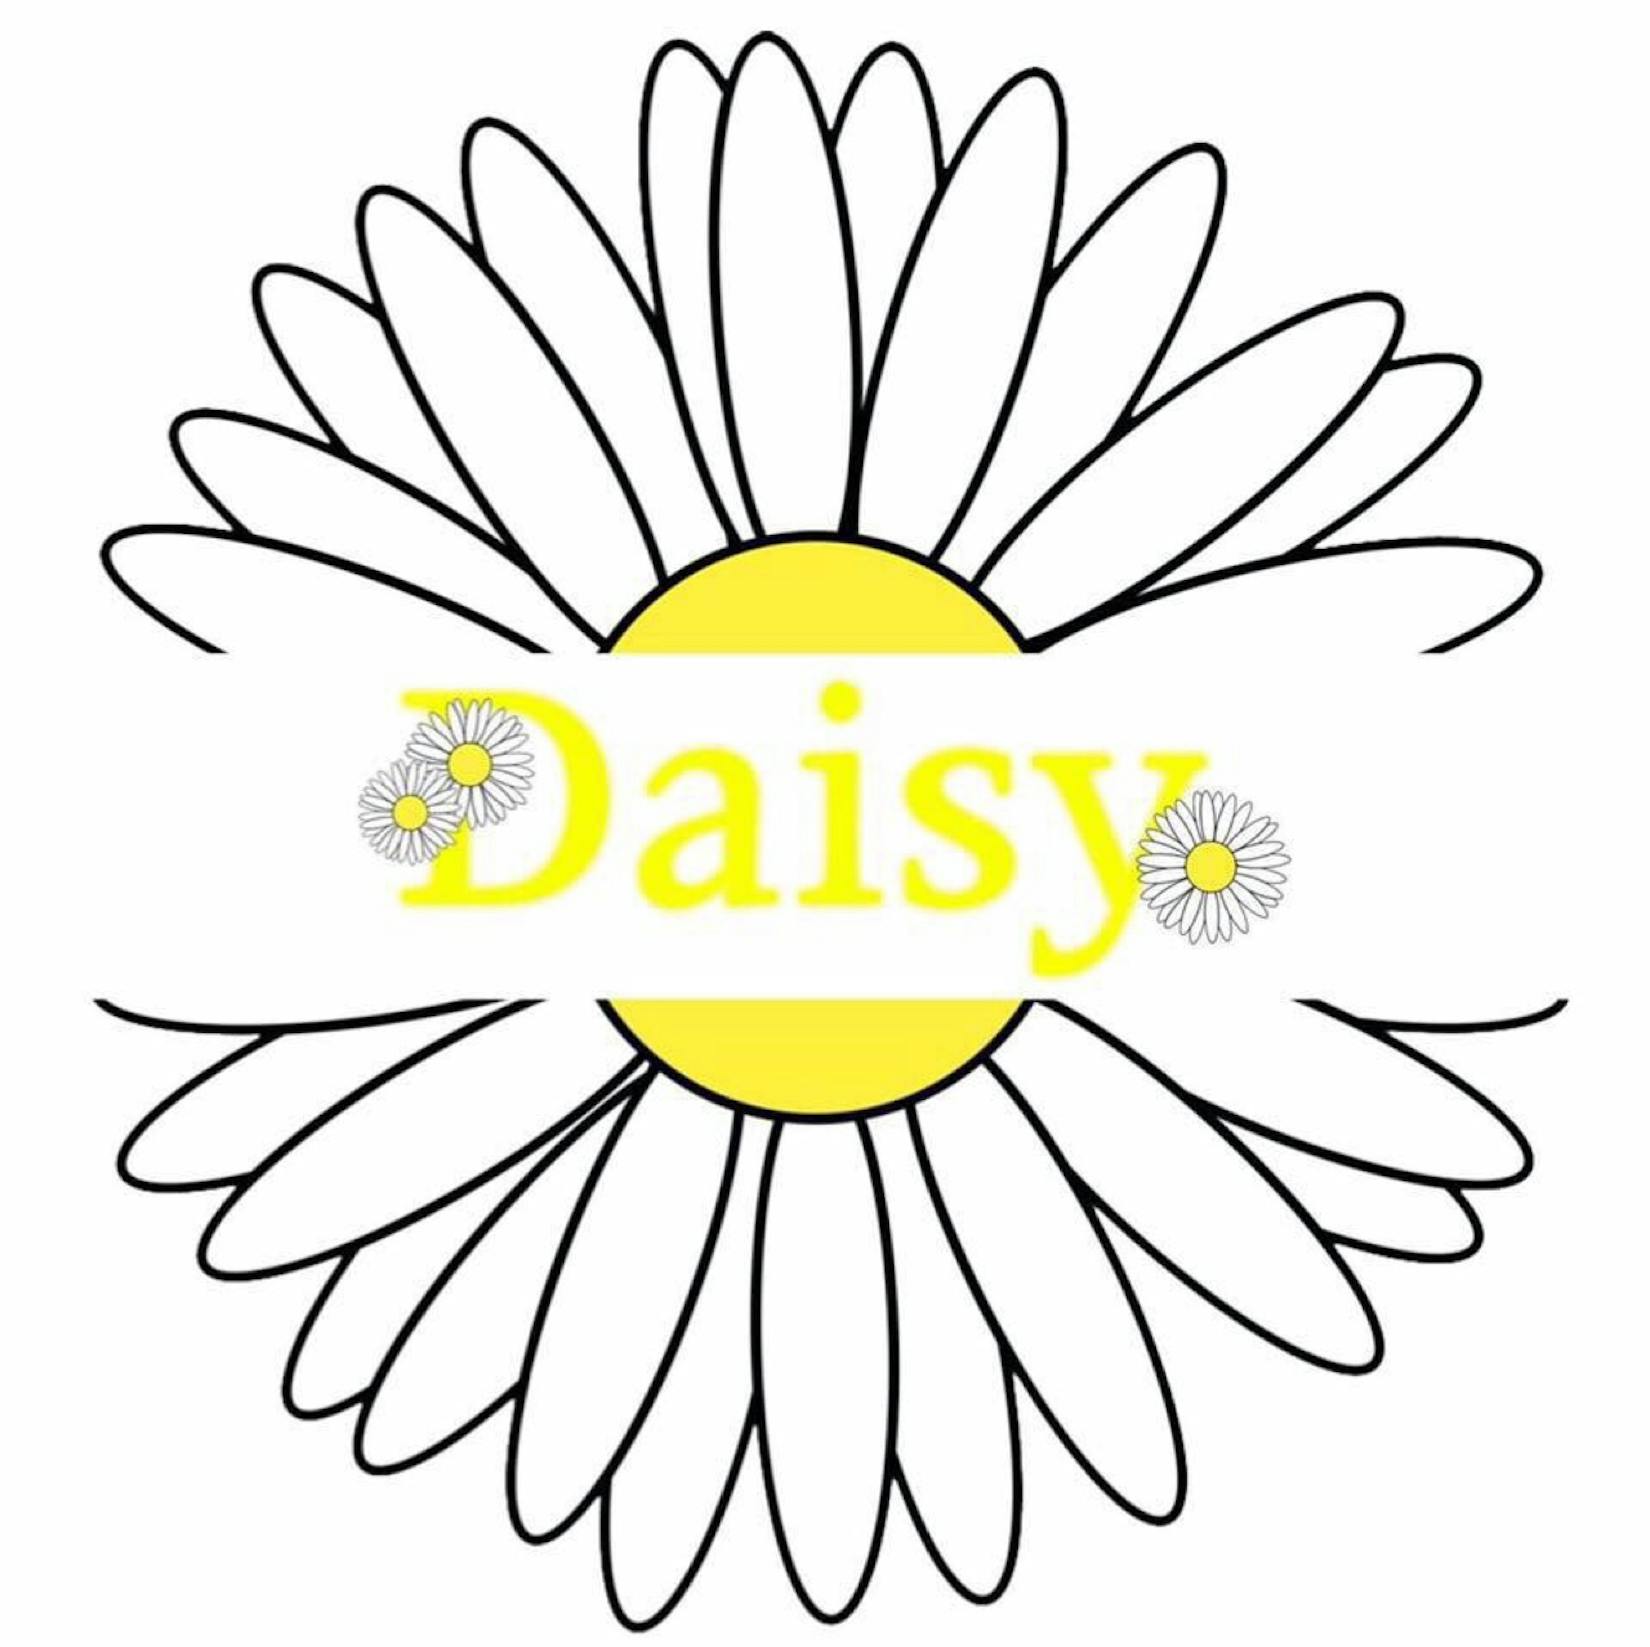 Daisy The Snack Bar | yathar